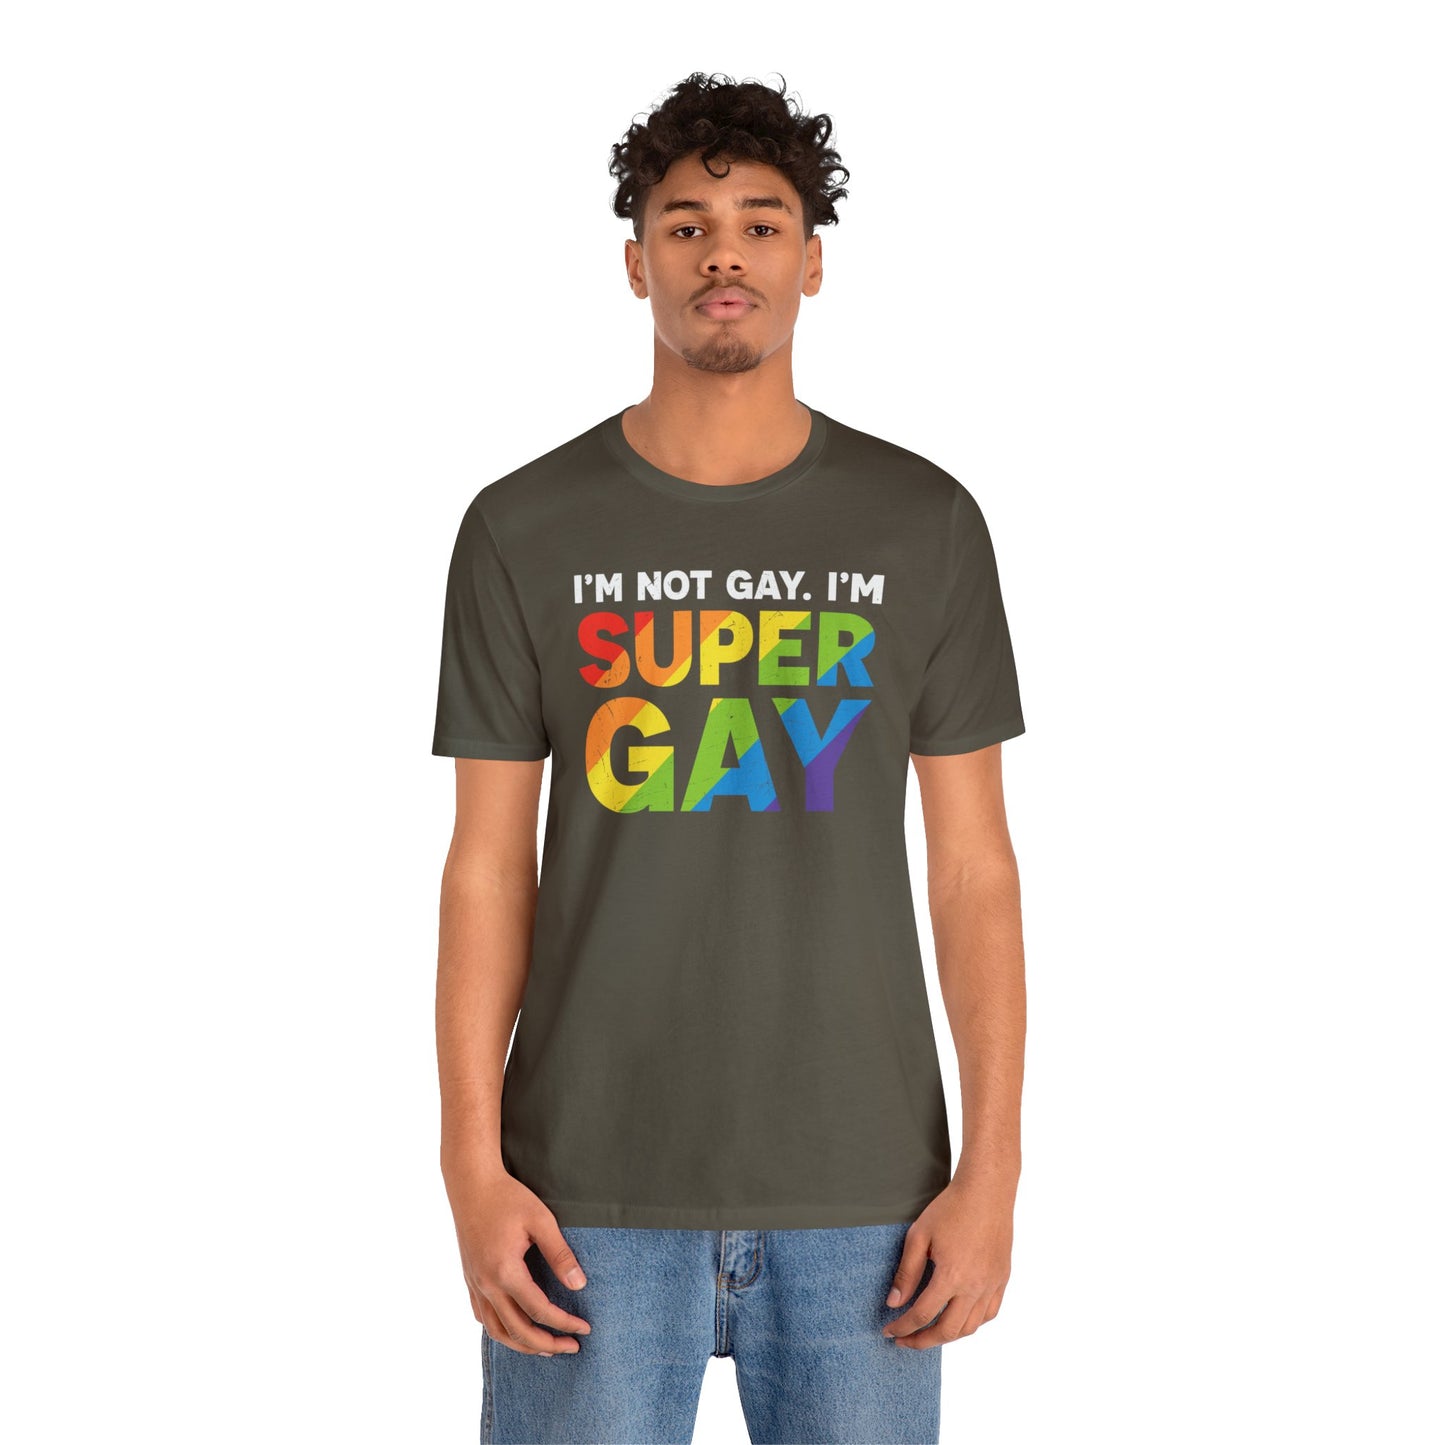 I'm Not Gay, I'm Super Gay